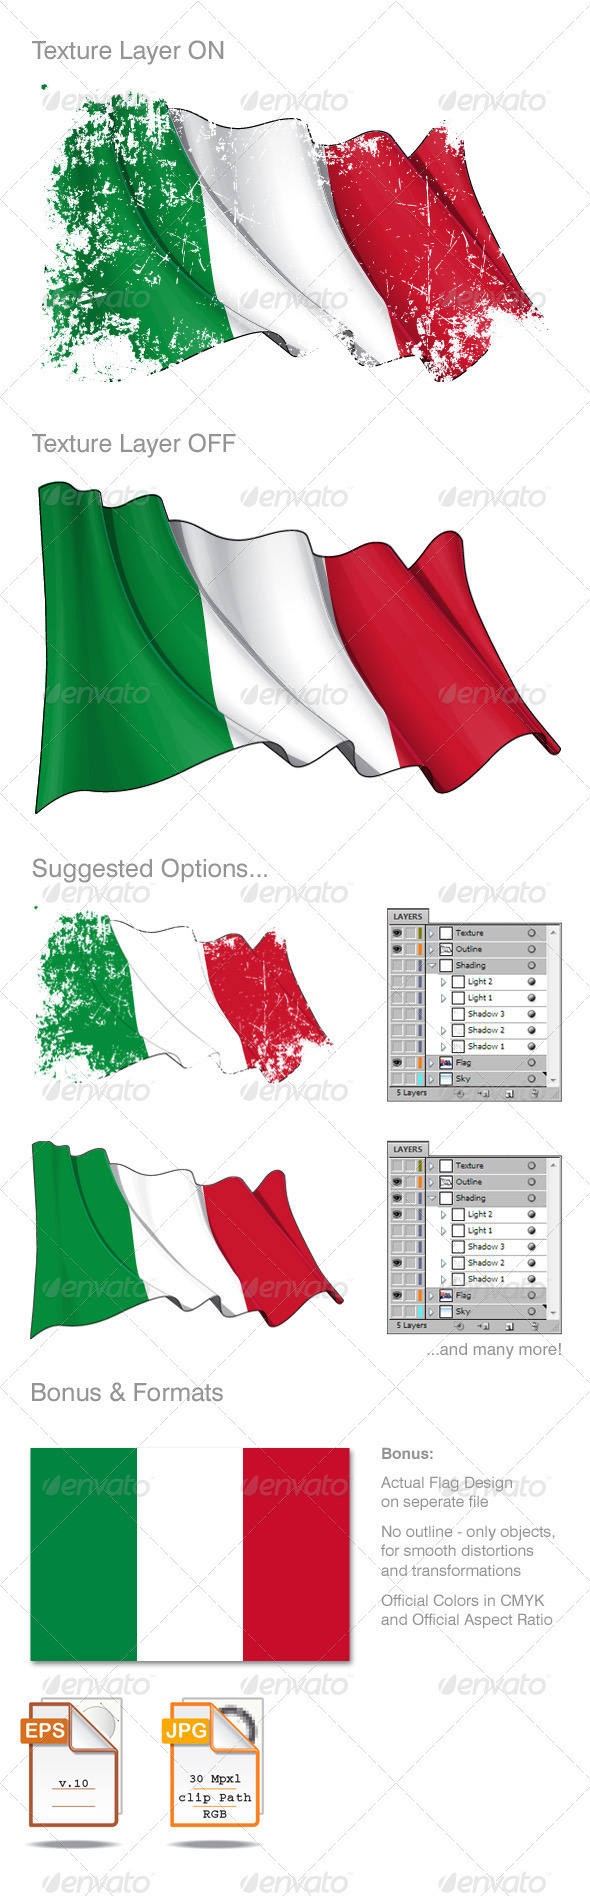 Italy Flag Grunge